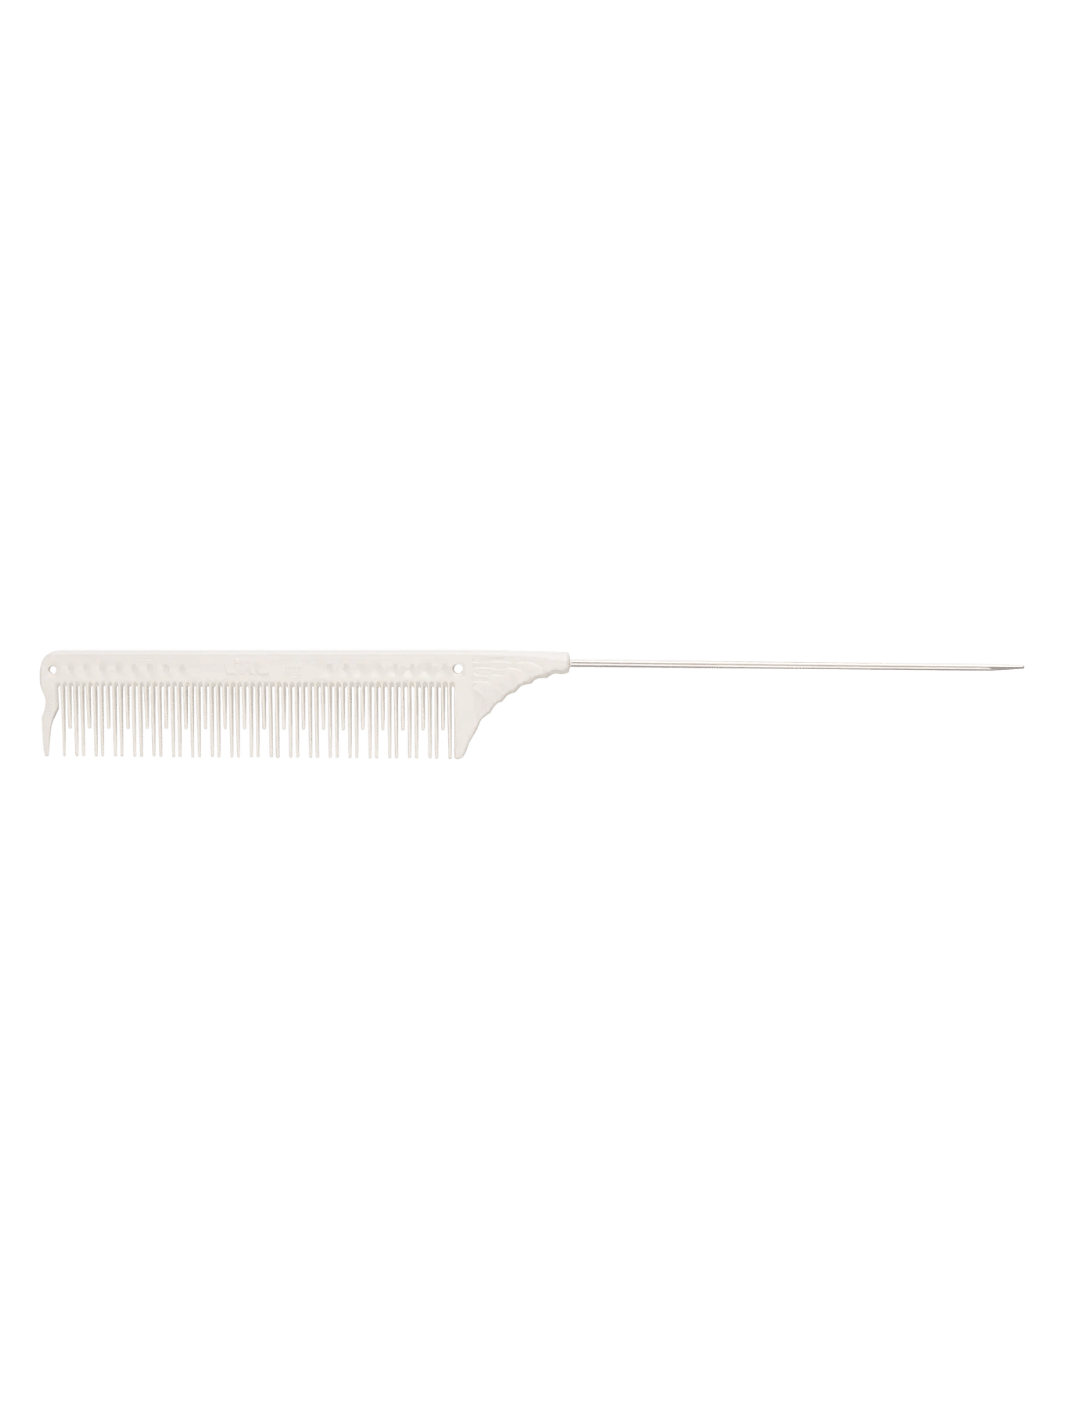 JRL J103 Toupier Nadelstielkamm 8.8" in Weiß, erhältlich bei Phullcutz. Ideal für präzises Toupieren und voluminöse Frisuren. Perfekt für professionelle und kreative Haarstylings.